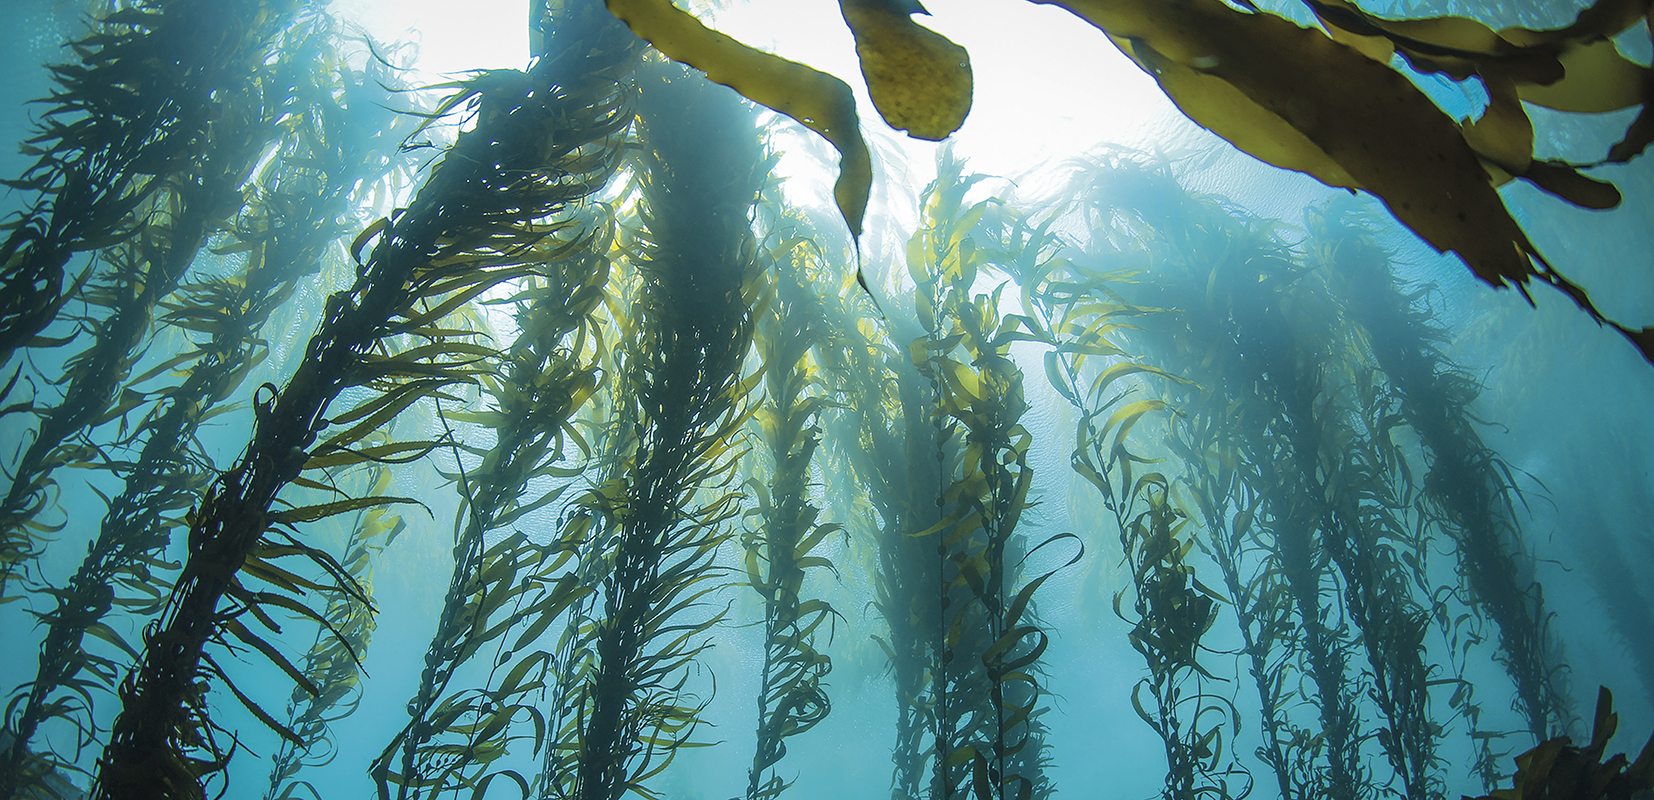 Algas marinas tunicadas que están siendo probadas con eficacia para combatir algunos tipos de cáncer